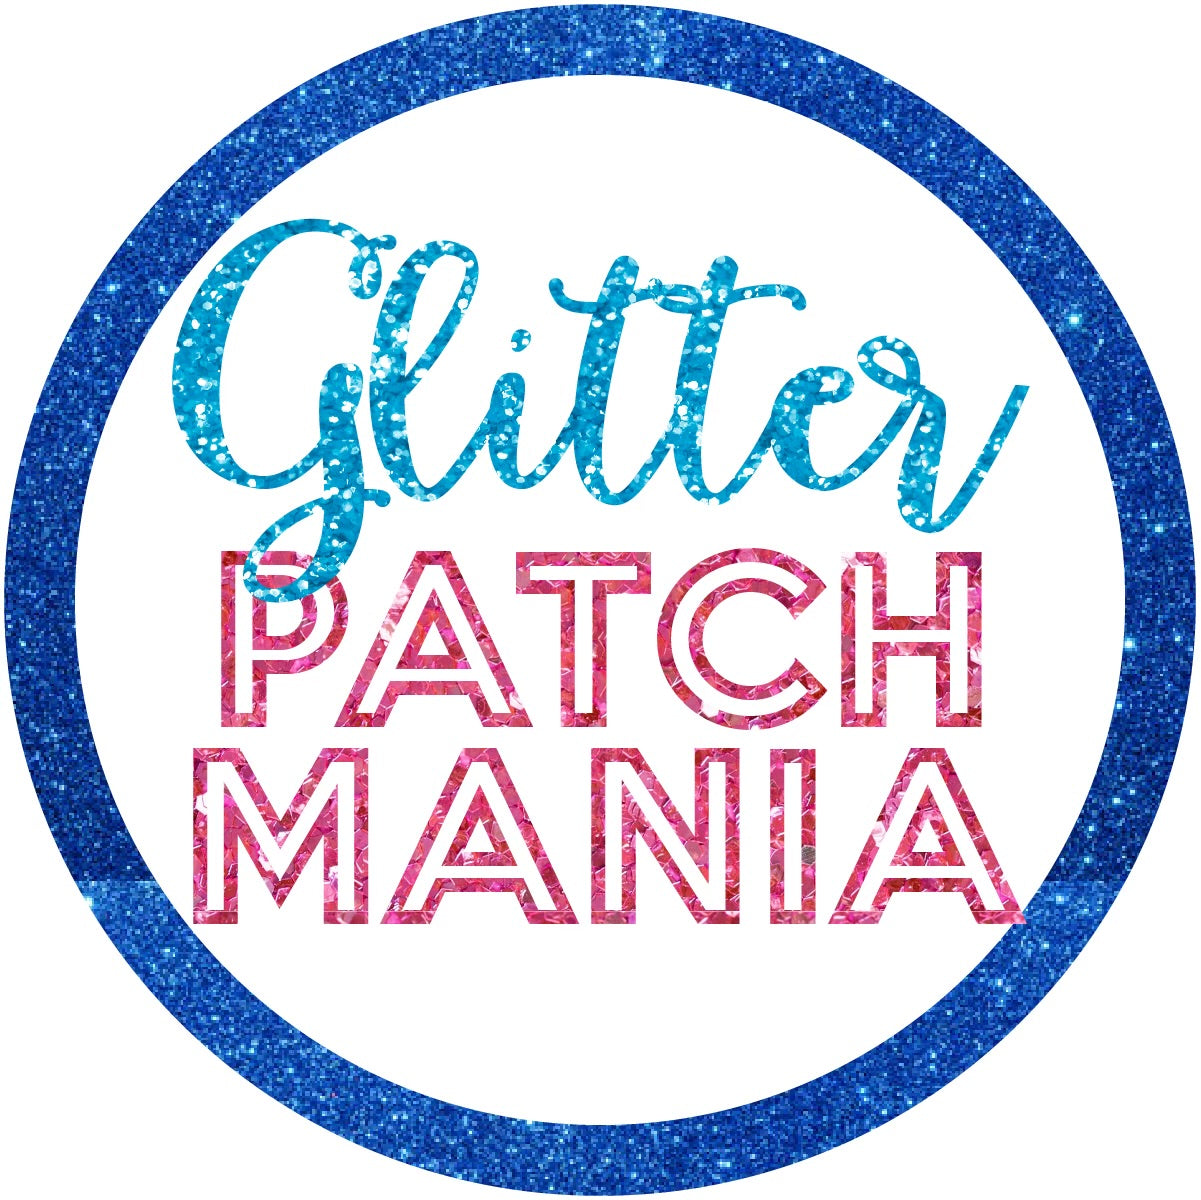 Glitter Patch Mania